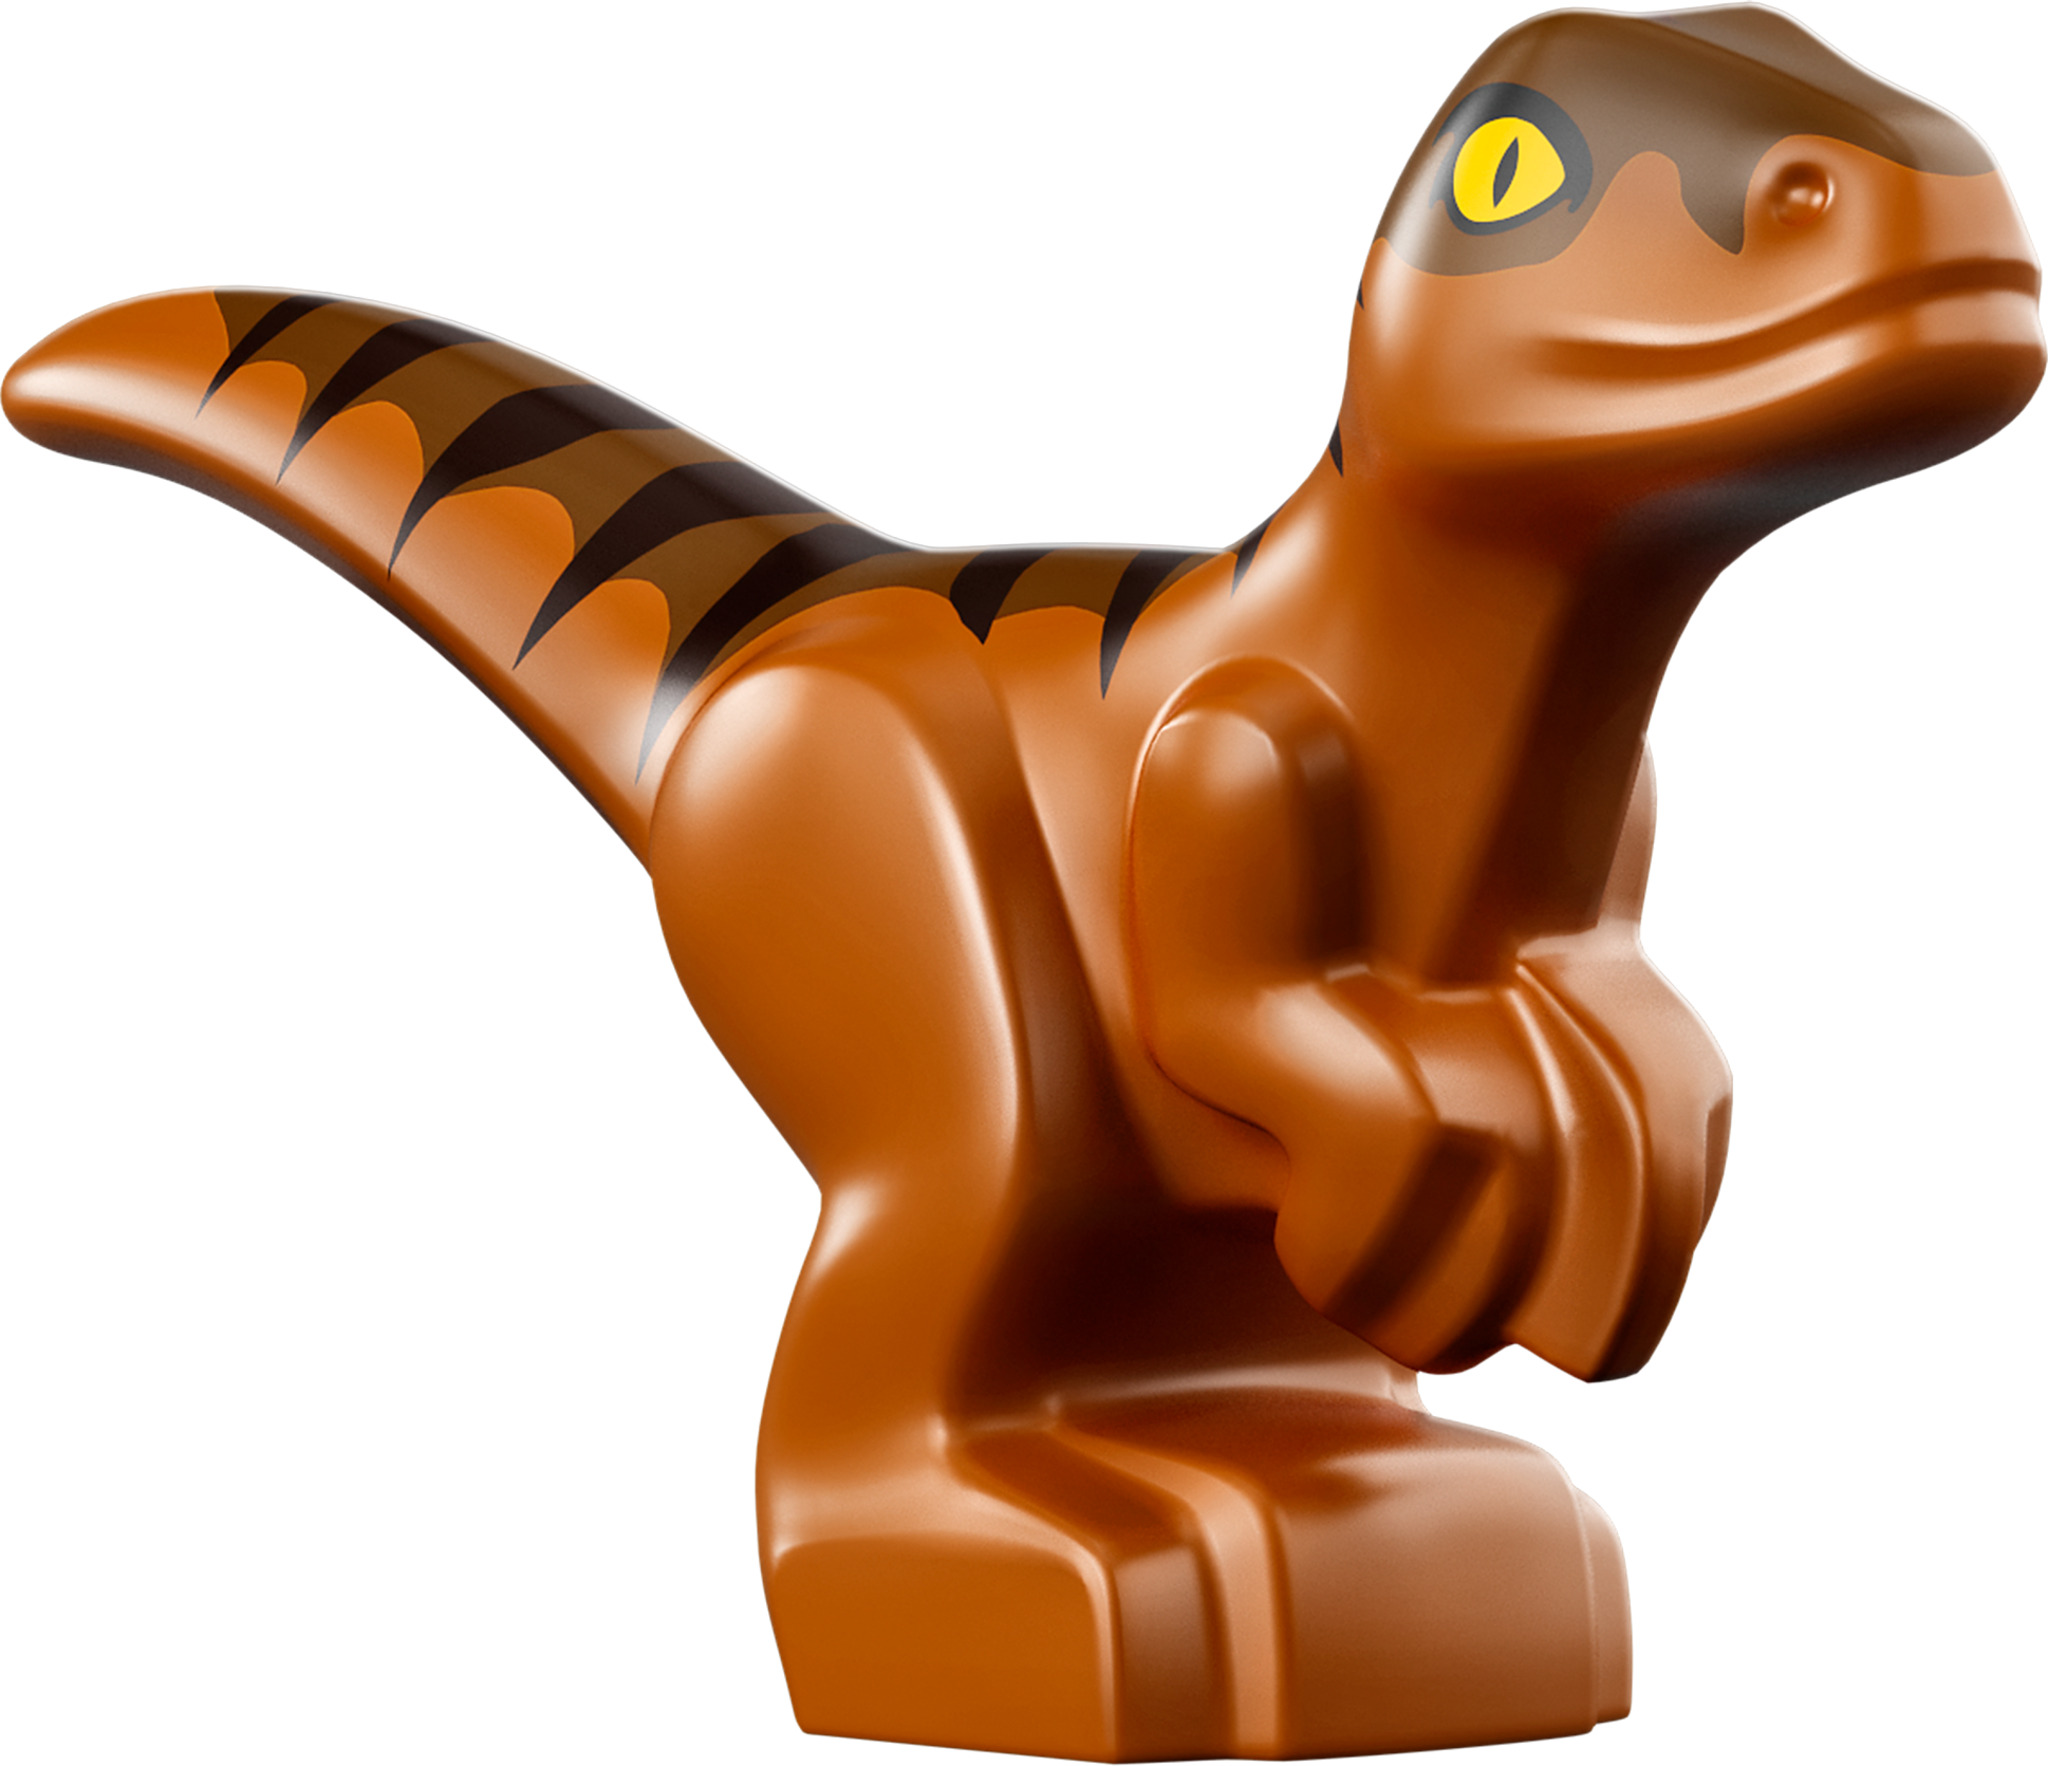 LEGO® 76942 Jurassic World L'Évasion en bateau du Baryonyx